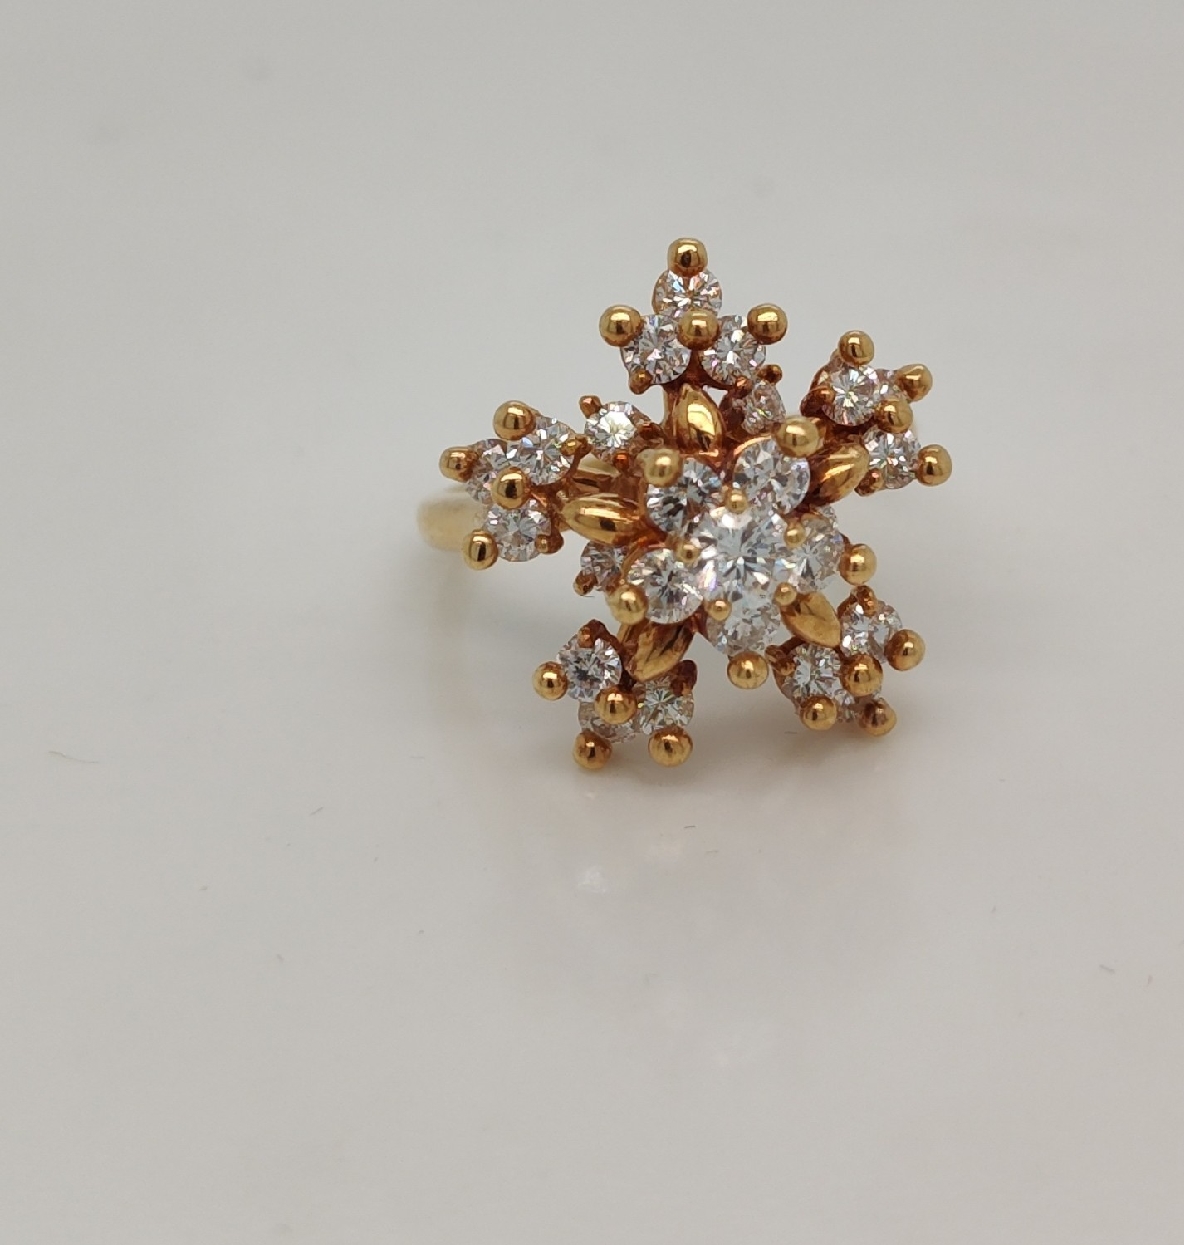 18K Yellow Gold Snowflake Style Diamond Ring 1.03CTTW Size 5.25